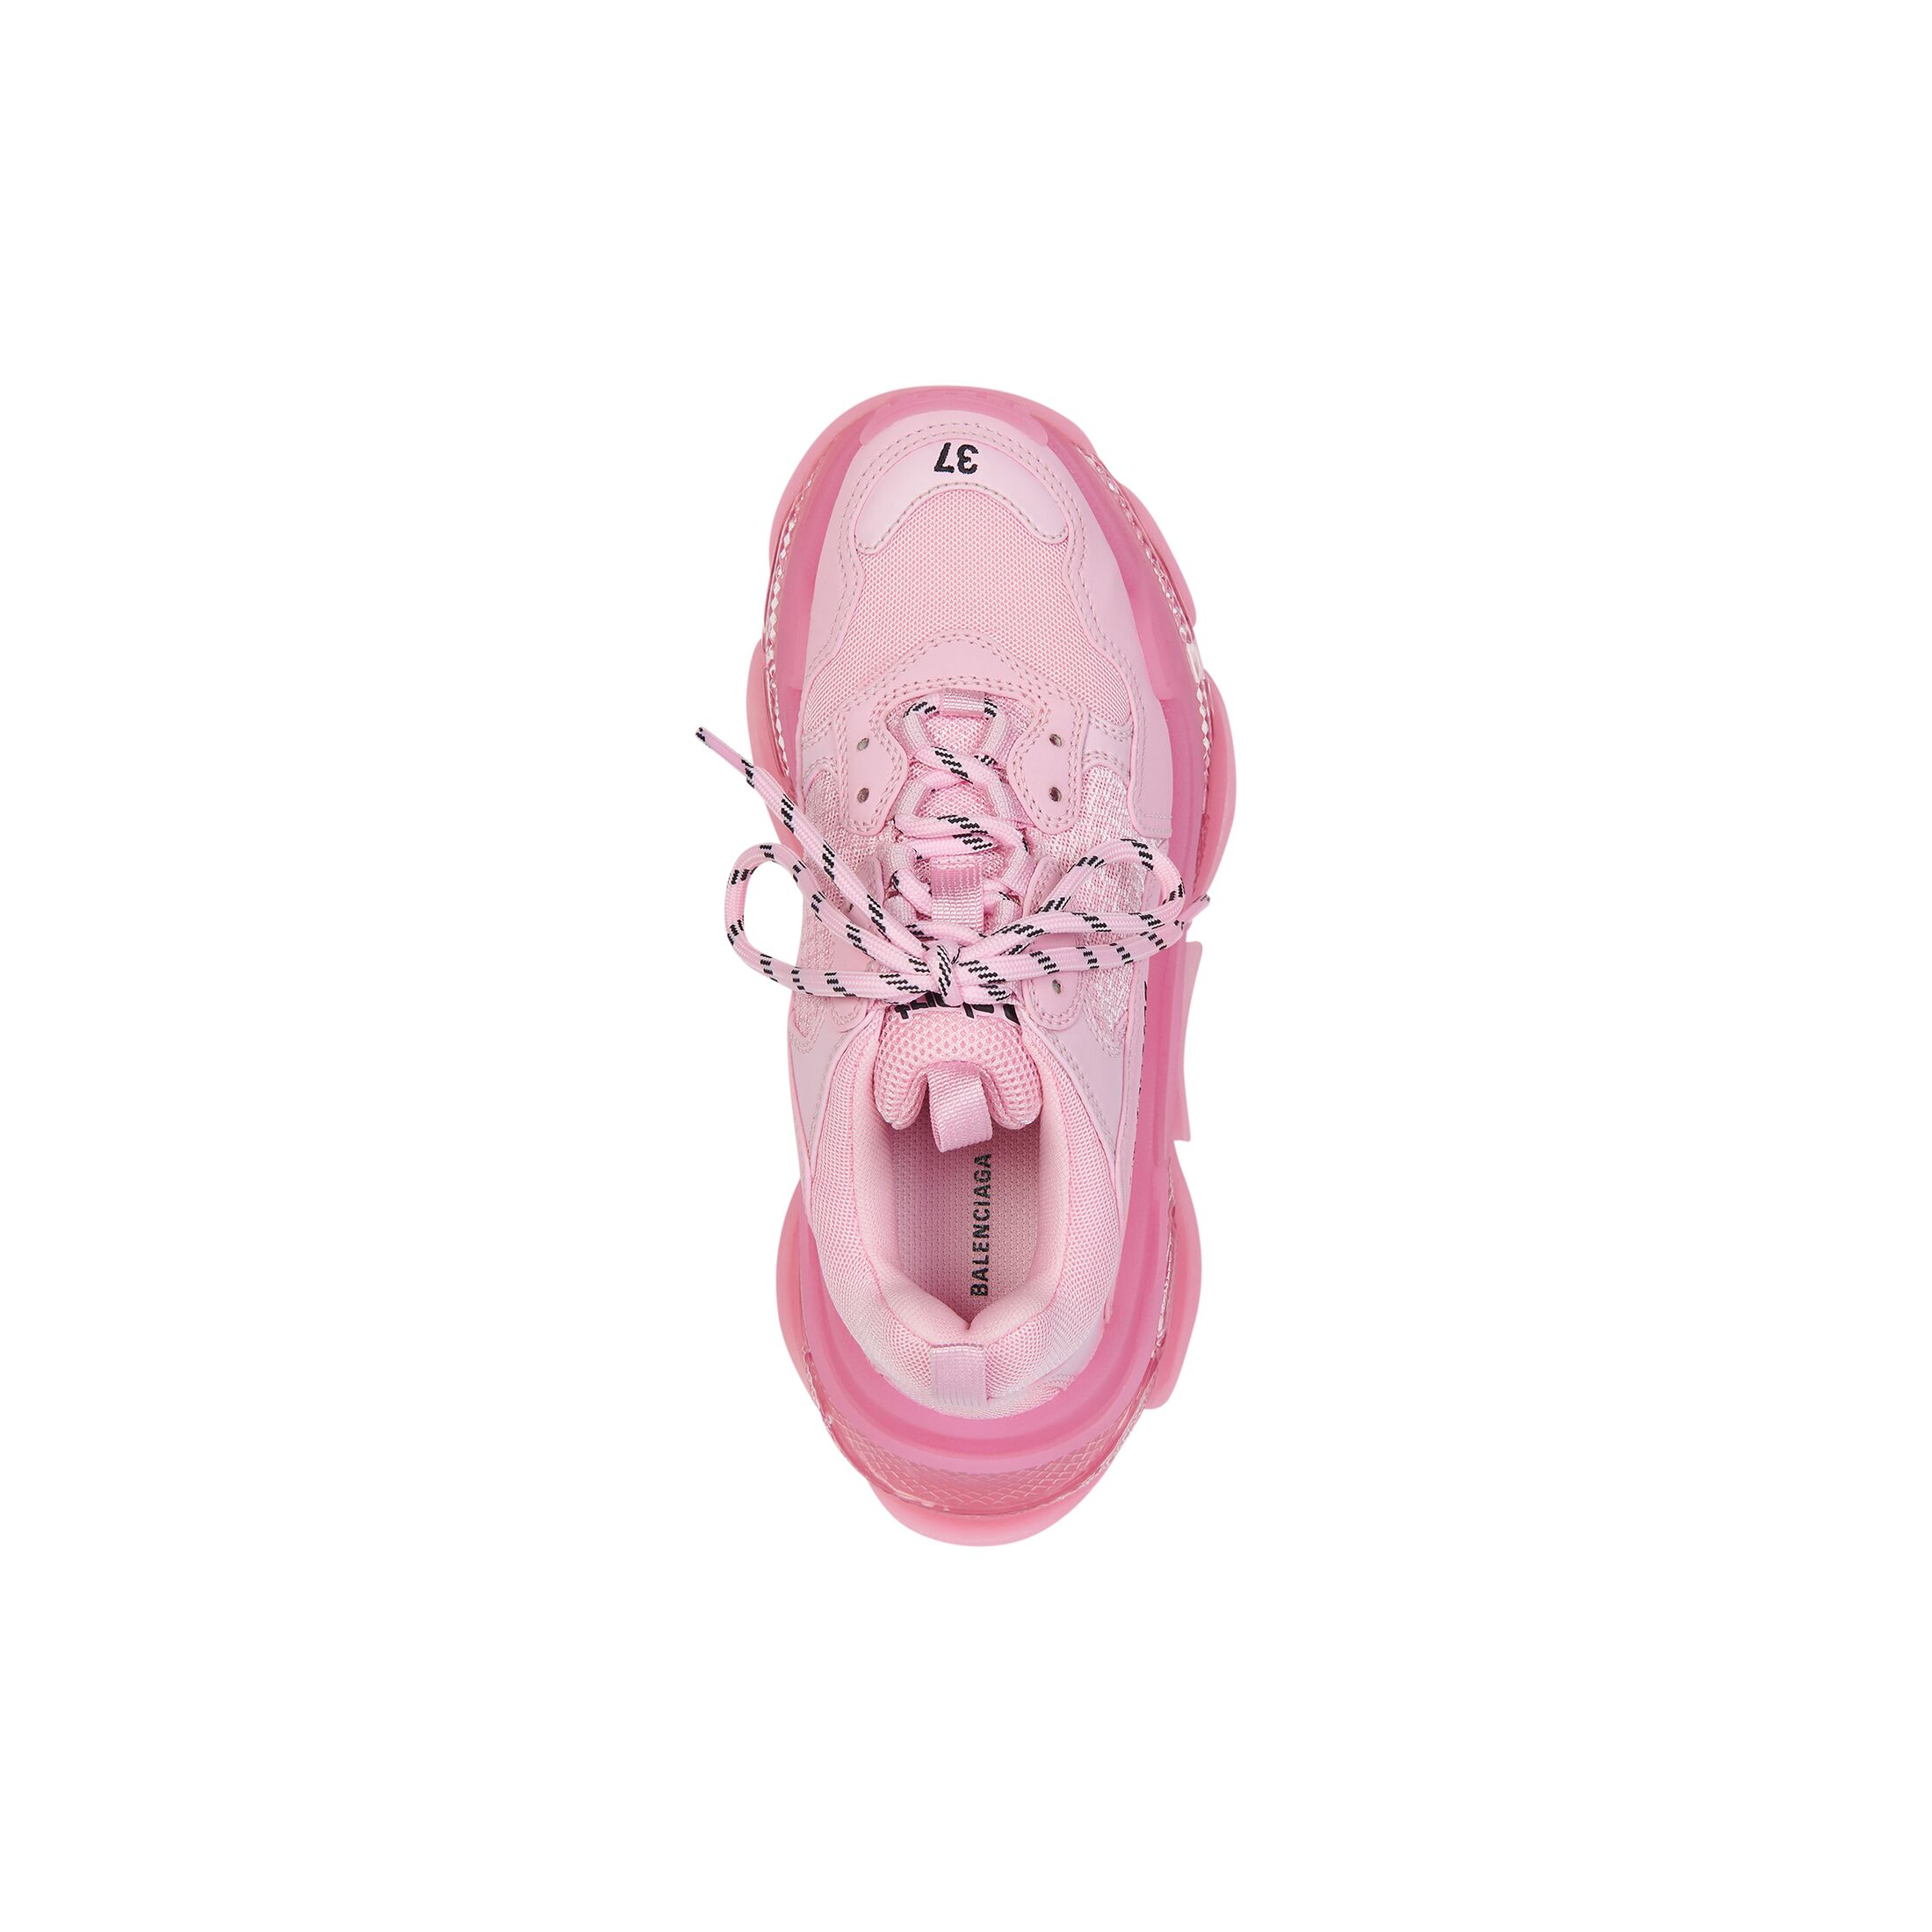 Women's Triple S Clear Sole Sneaker in Pink | Balenciaga US